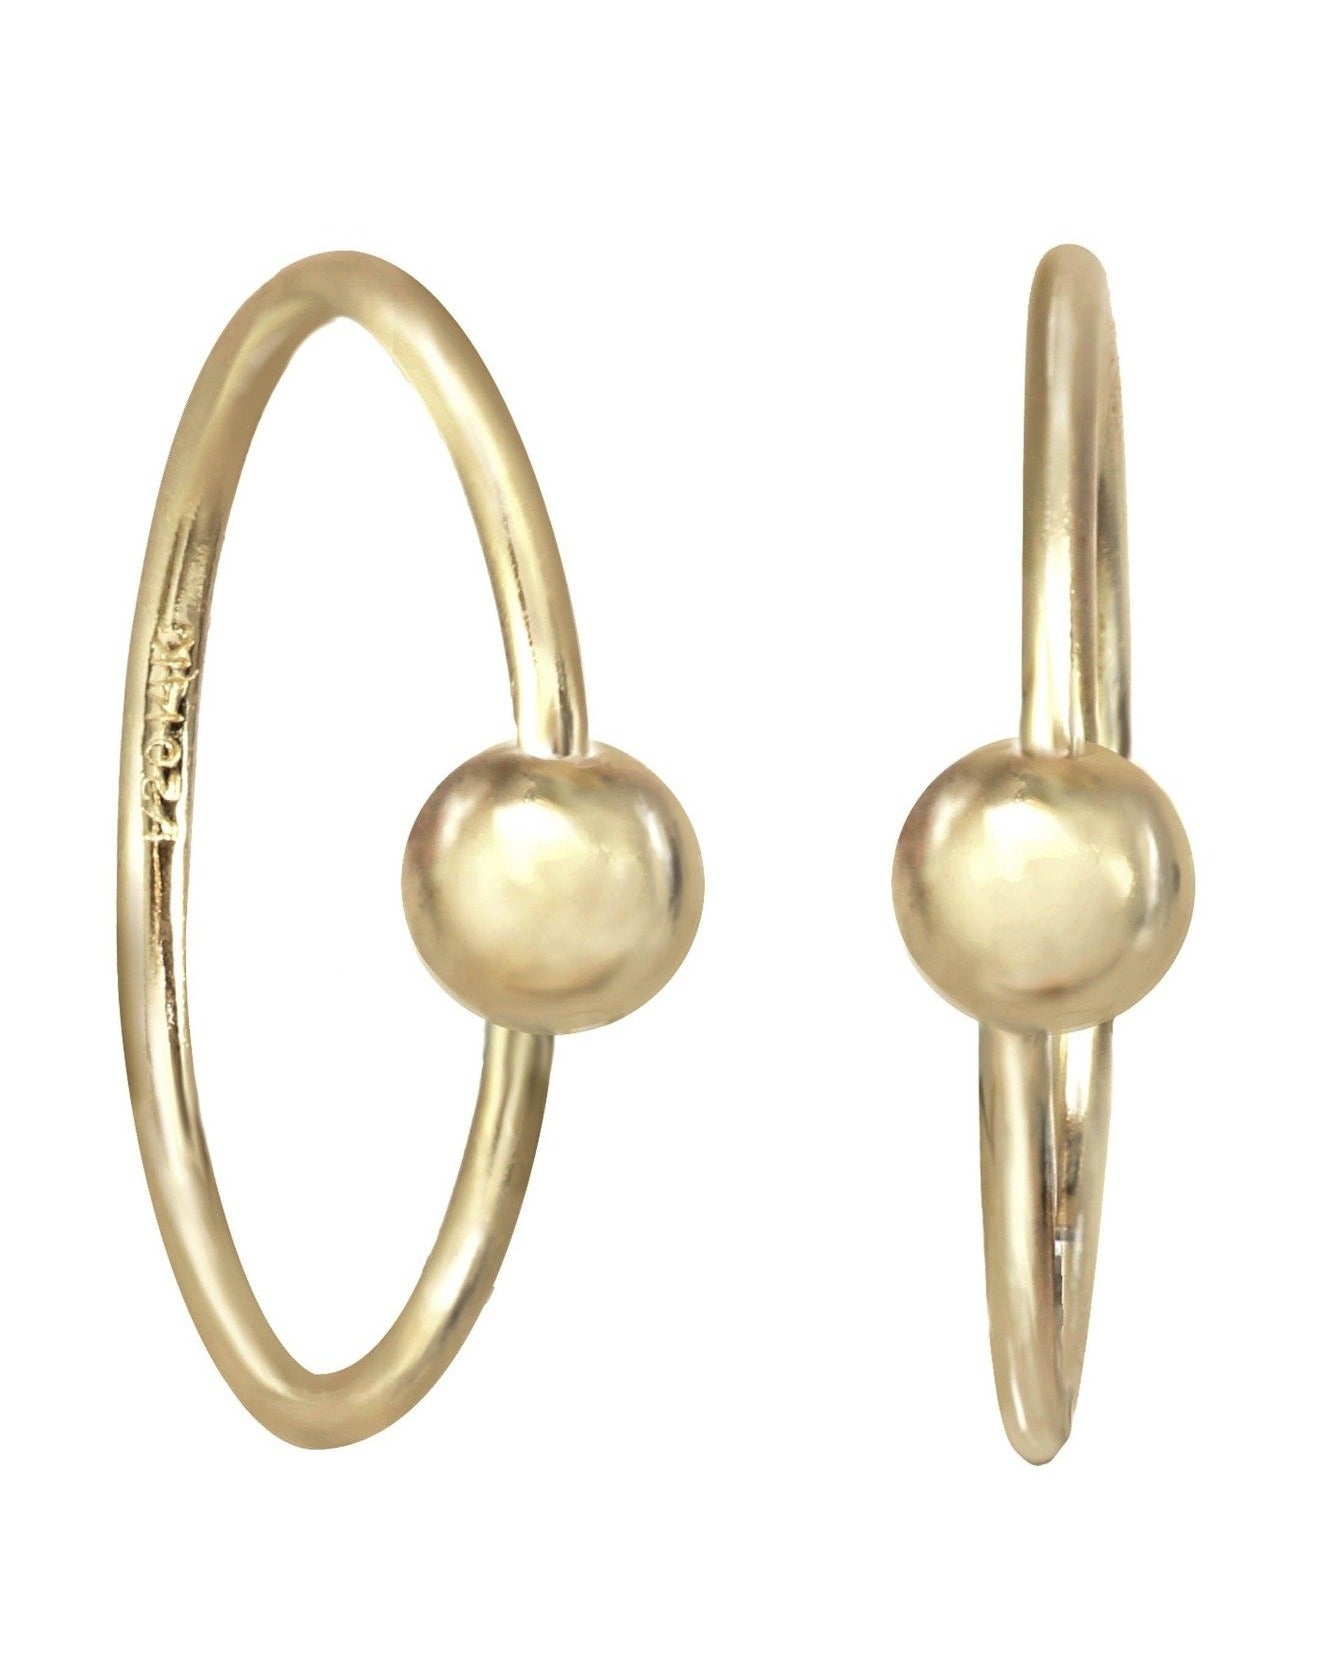 Harlie Hoop Earrings by KOZAKH. 12mm snap hoop earrings, crafted in 14K Gold Filled.